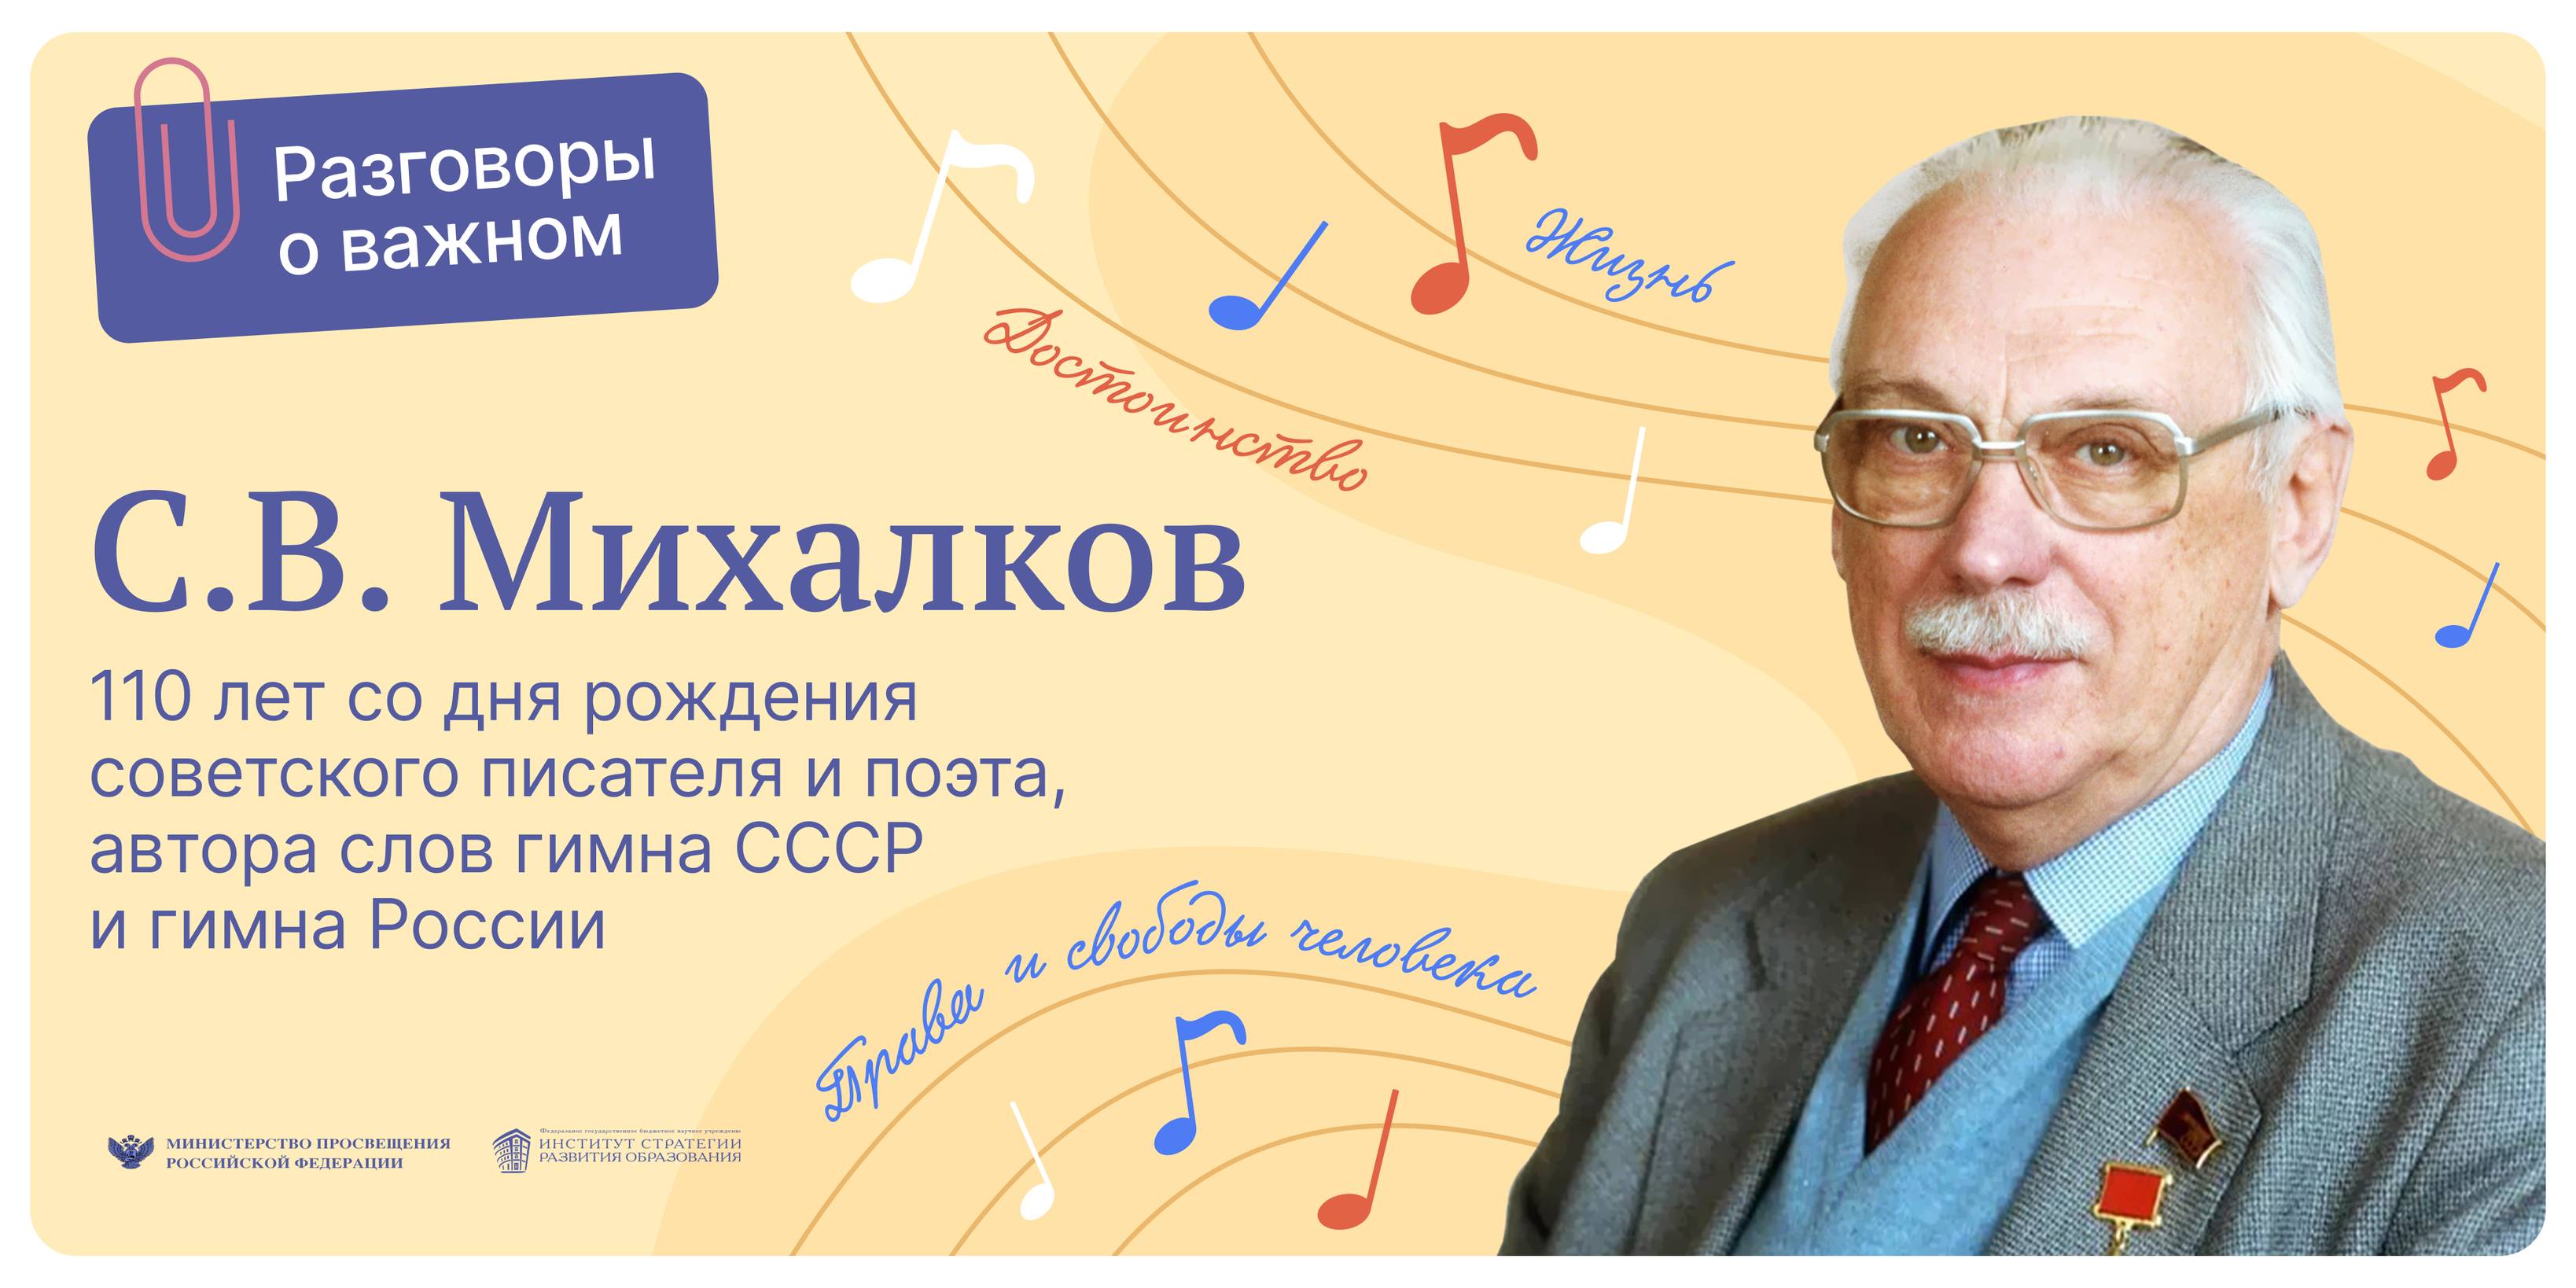 110 лет со дня рождения С.В. Михалкова- советского писателя и поэта, автора слов гимна СССР и гимна России